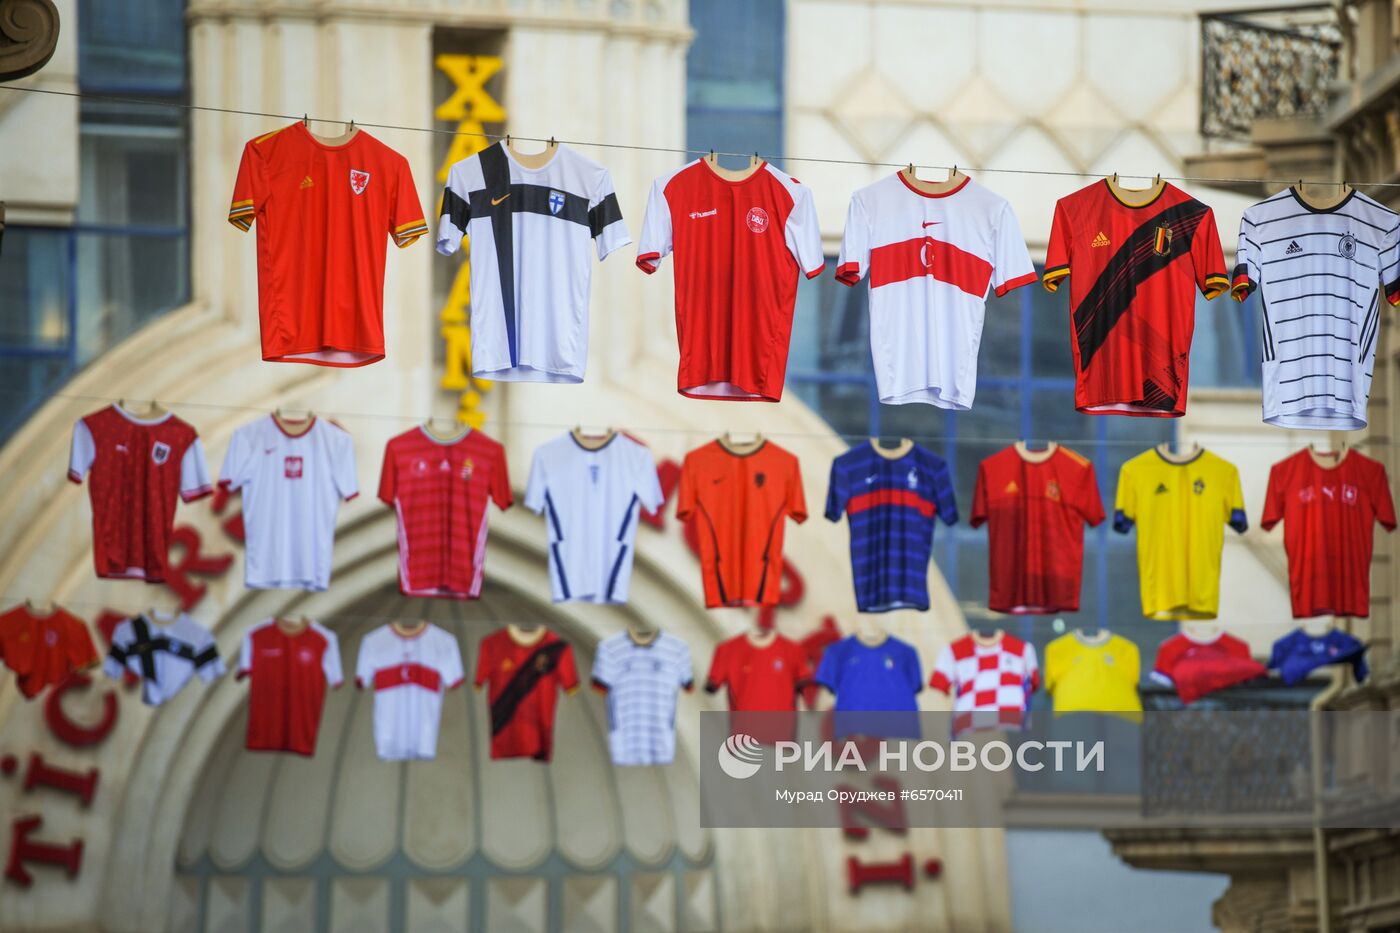 Баку в преддверии ЧЕ-2020 по футболу